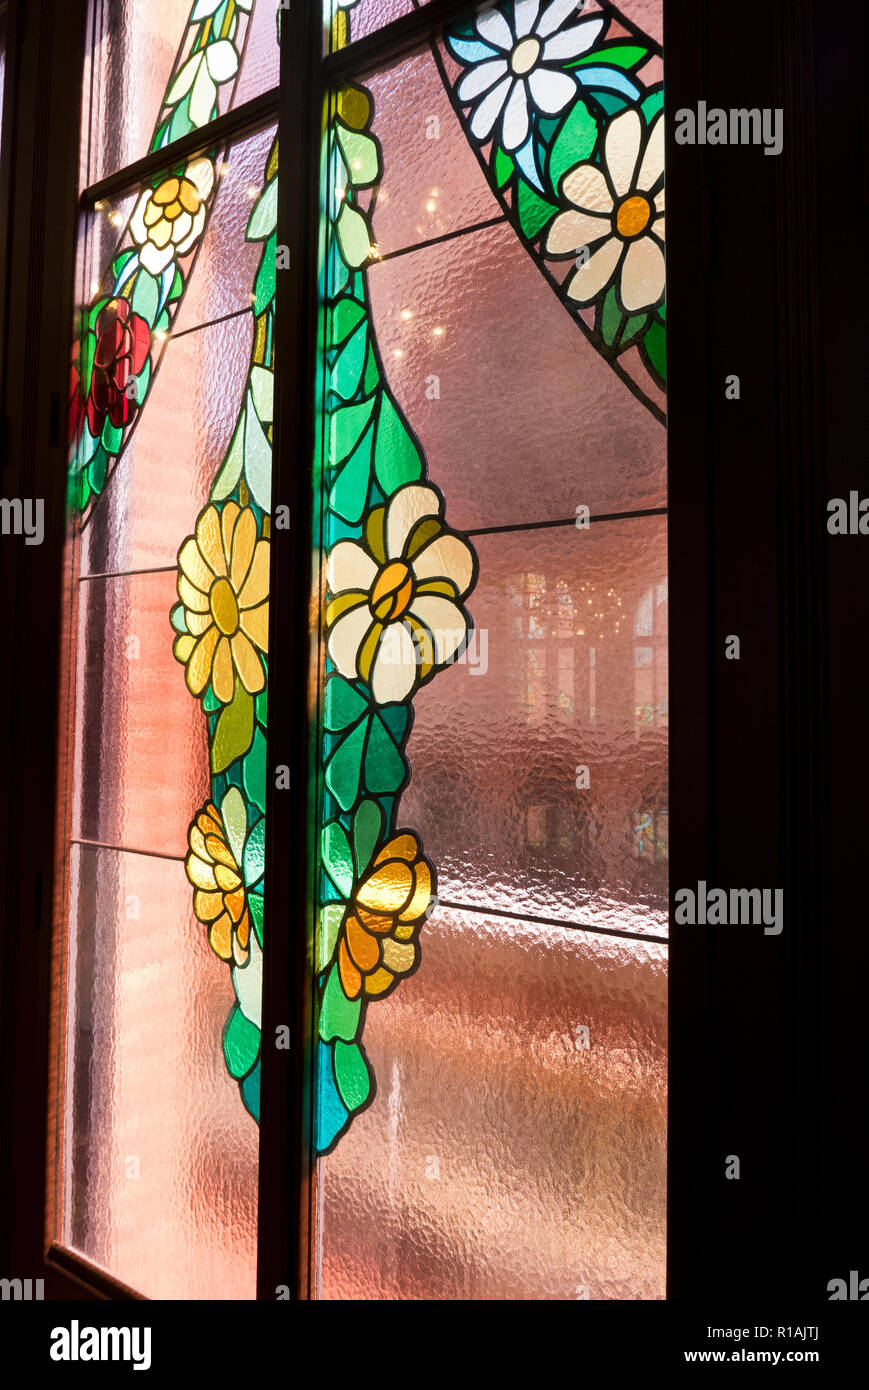 Un design fleuri coloré sur la fenêtre de la Palau de la Musica, Barcelone, Espagne Banque D'Images